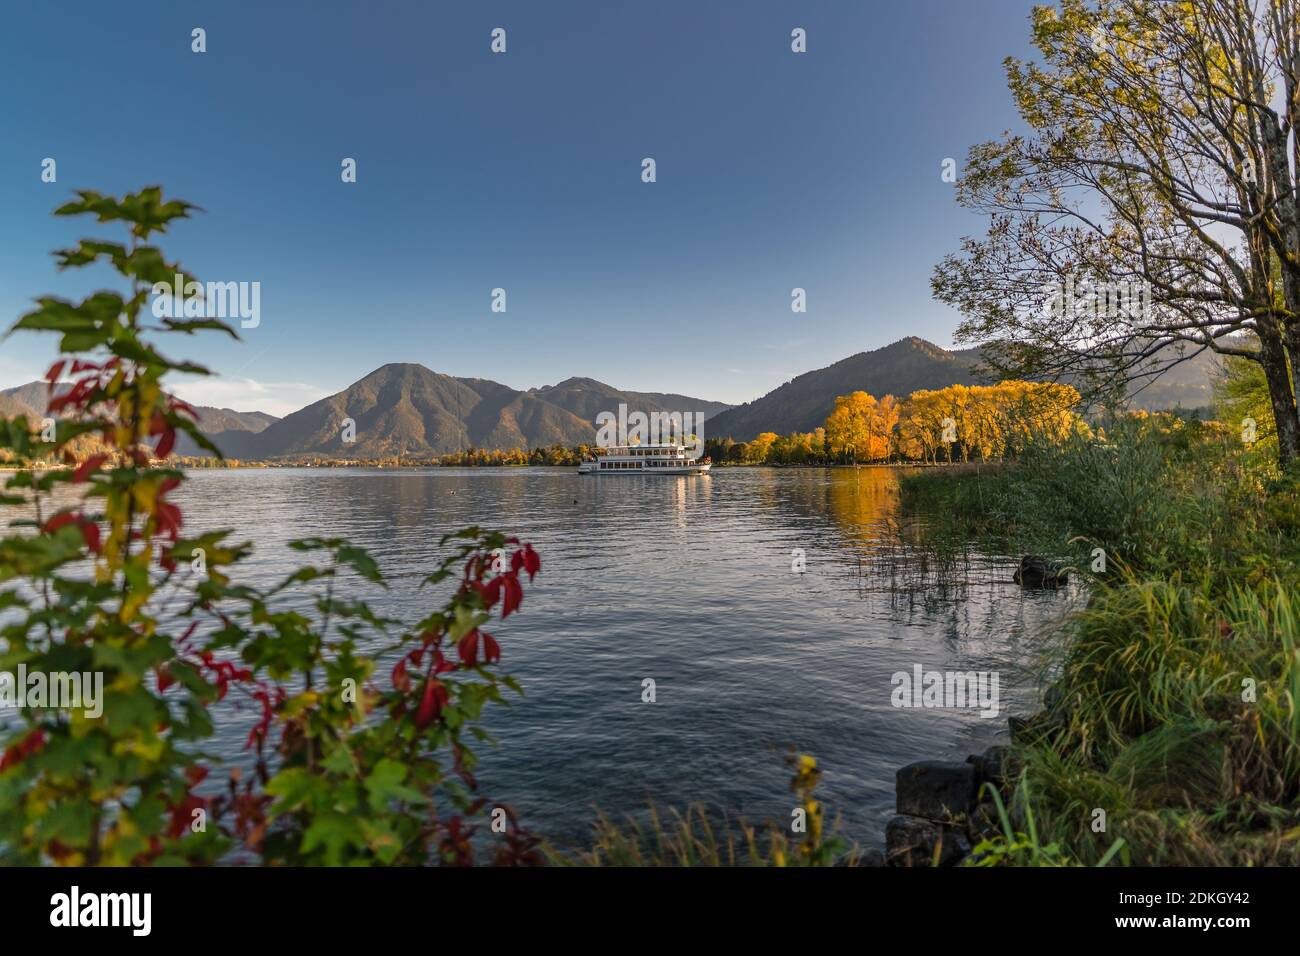 Un beau lac derrière certaines plantes de couleur d'automne avec une montagne en arrière-plan. Banque D'Images